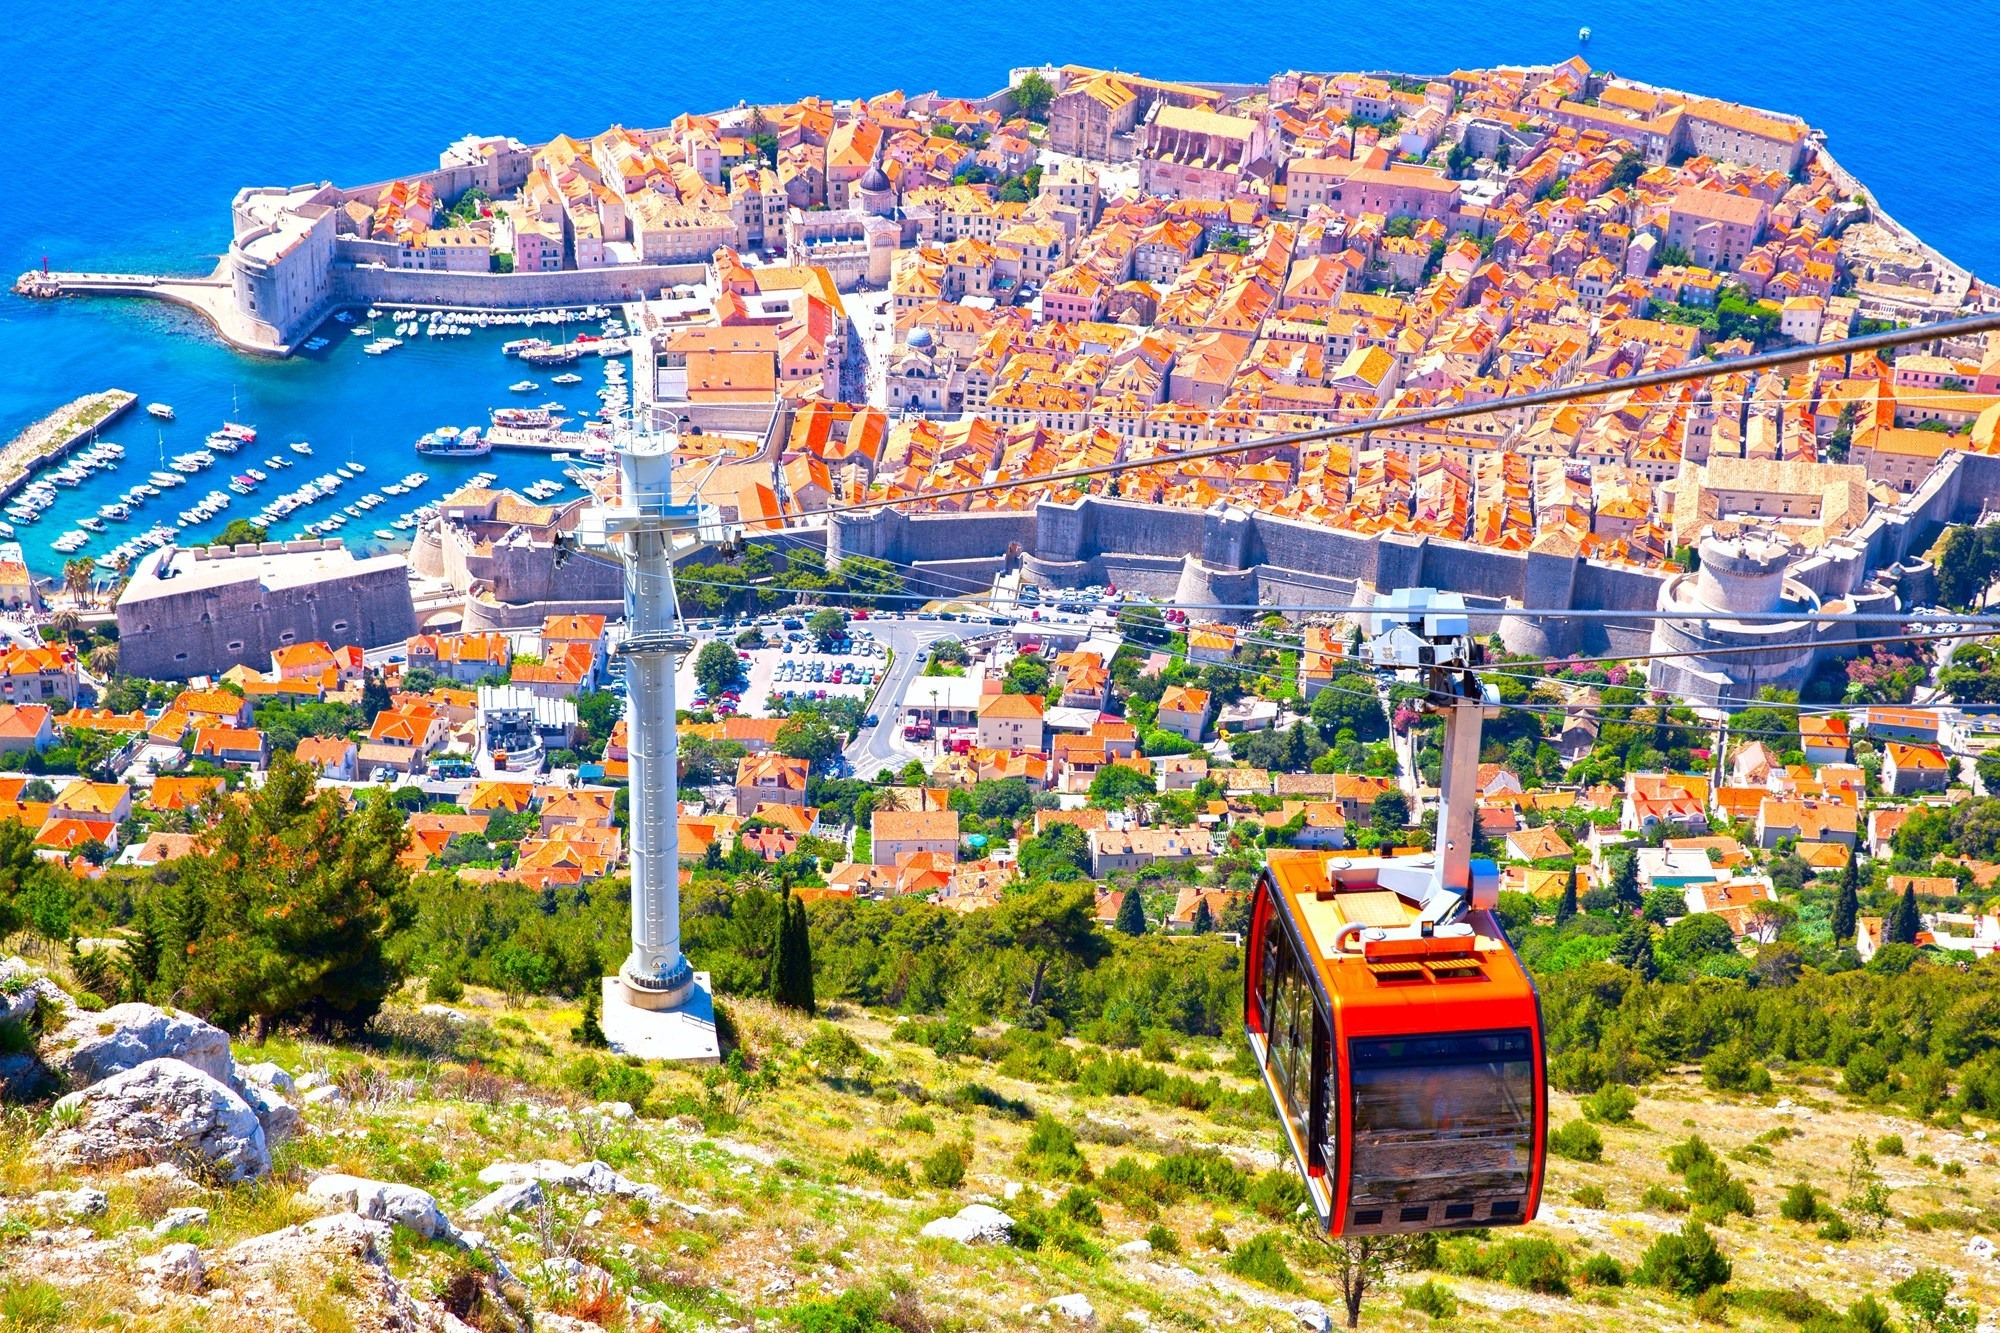 Visiter Dubrovnik sans voiture : Prenez un peu de hauteur avec le funiculaire